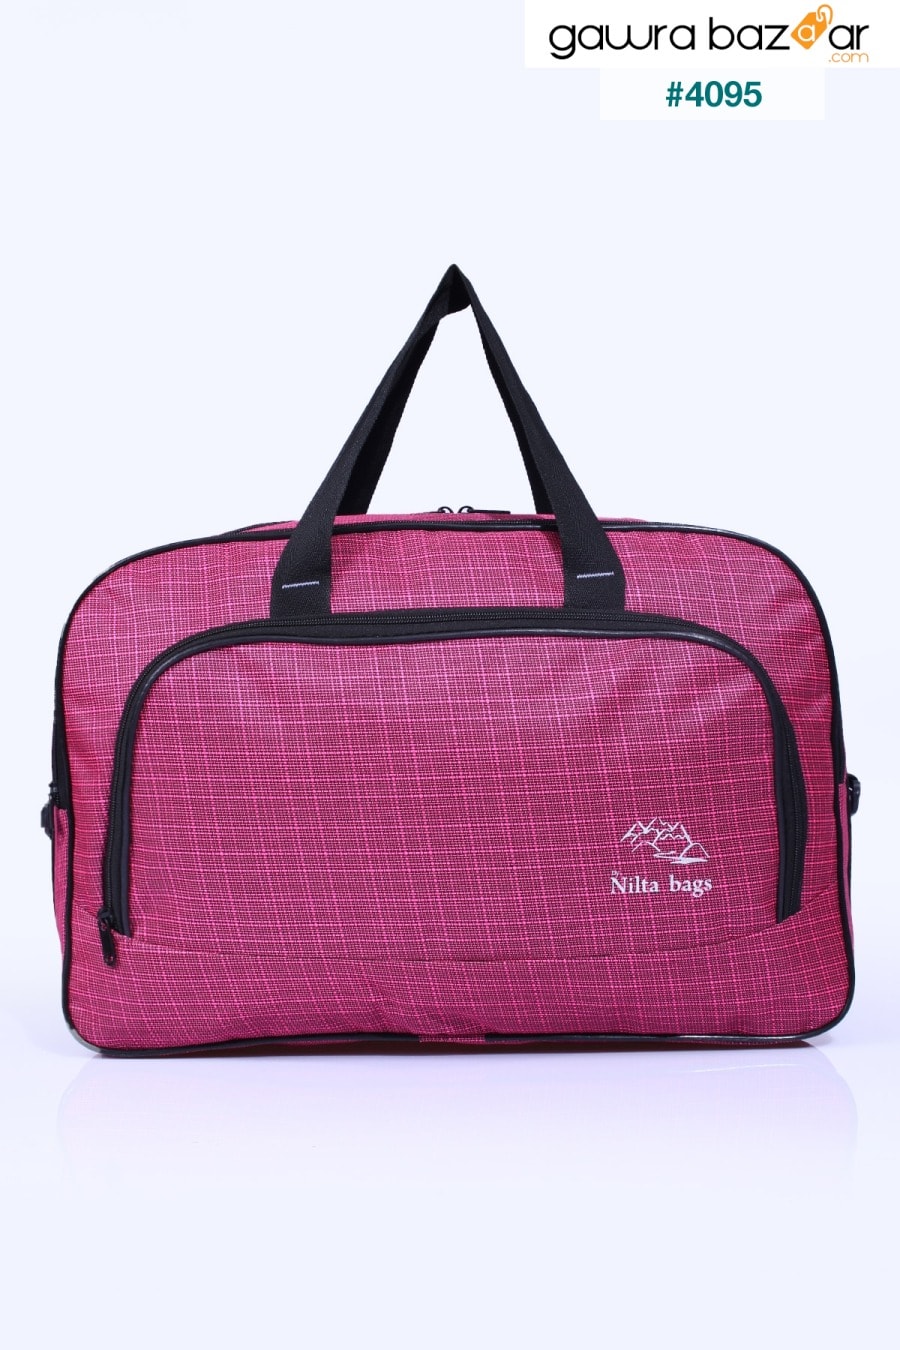 Nil-01 حقيبة مضيفة قماشية للجنسين للسفر والعطلات والمستشفى الرياضي متعدد الأقسام وحقيبة كتف Fiyaka 1